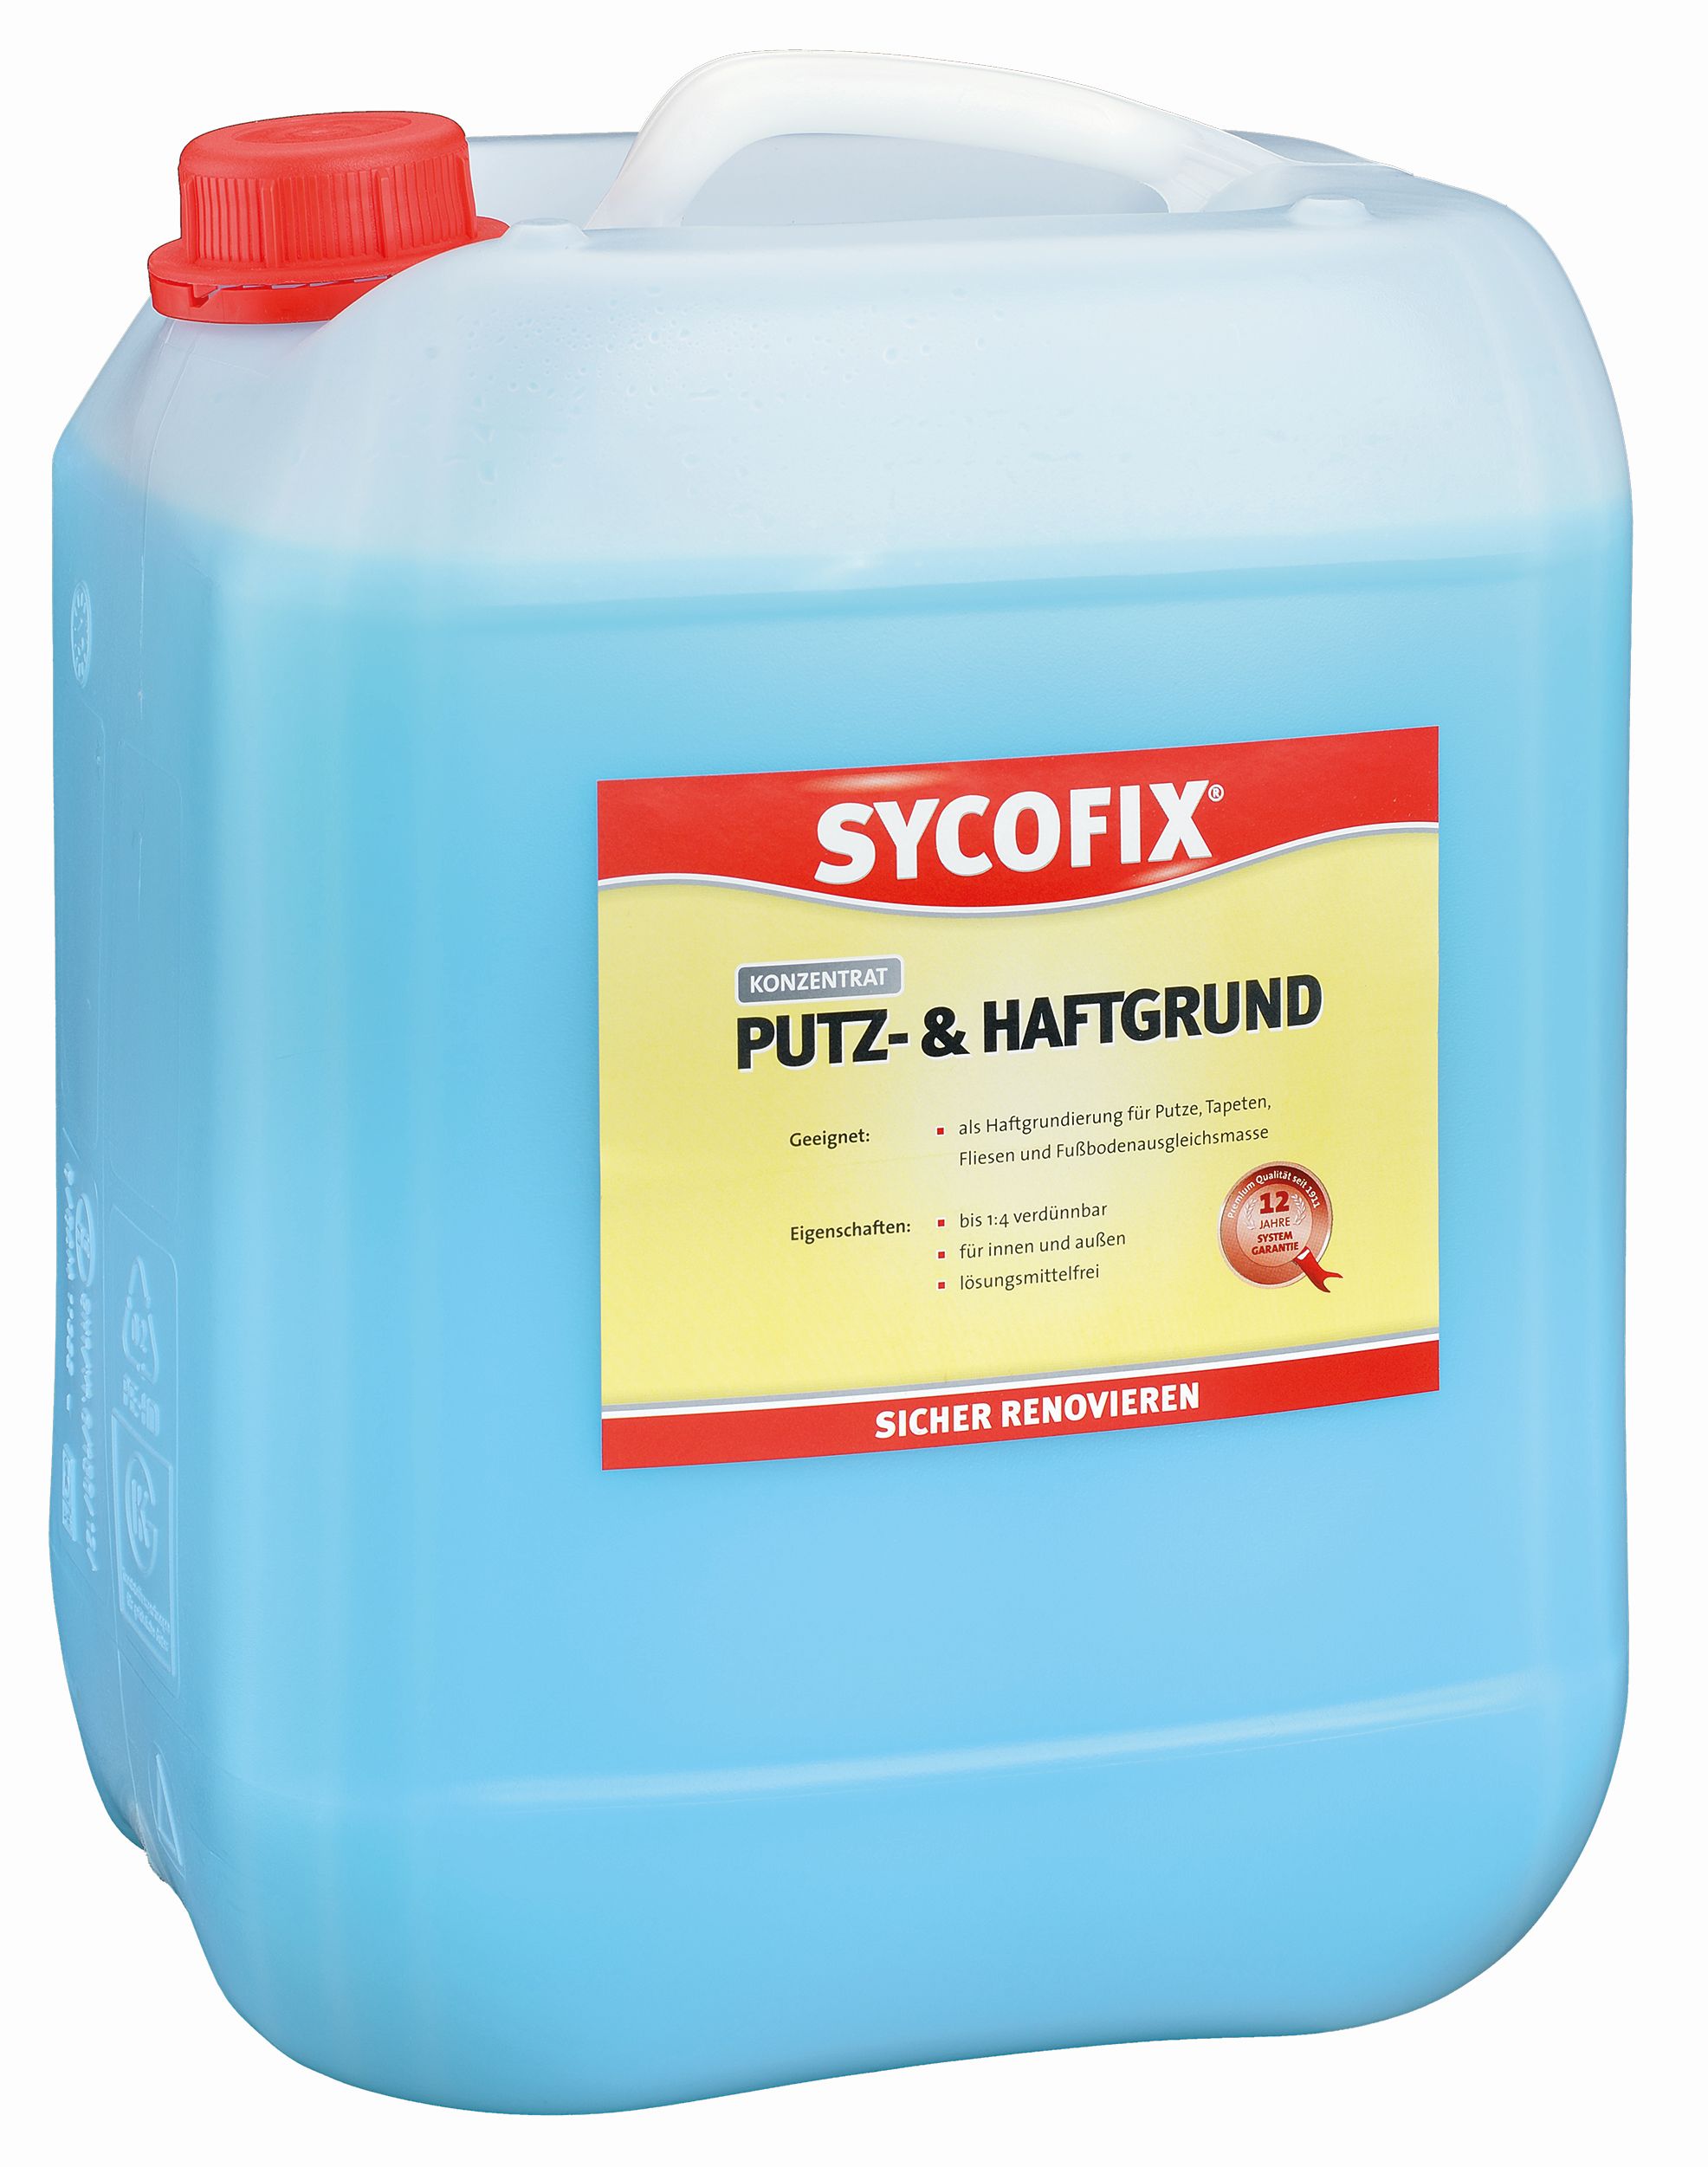 SYCOFIX ® Putz- und Haftgrund 10 L